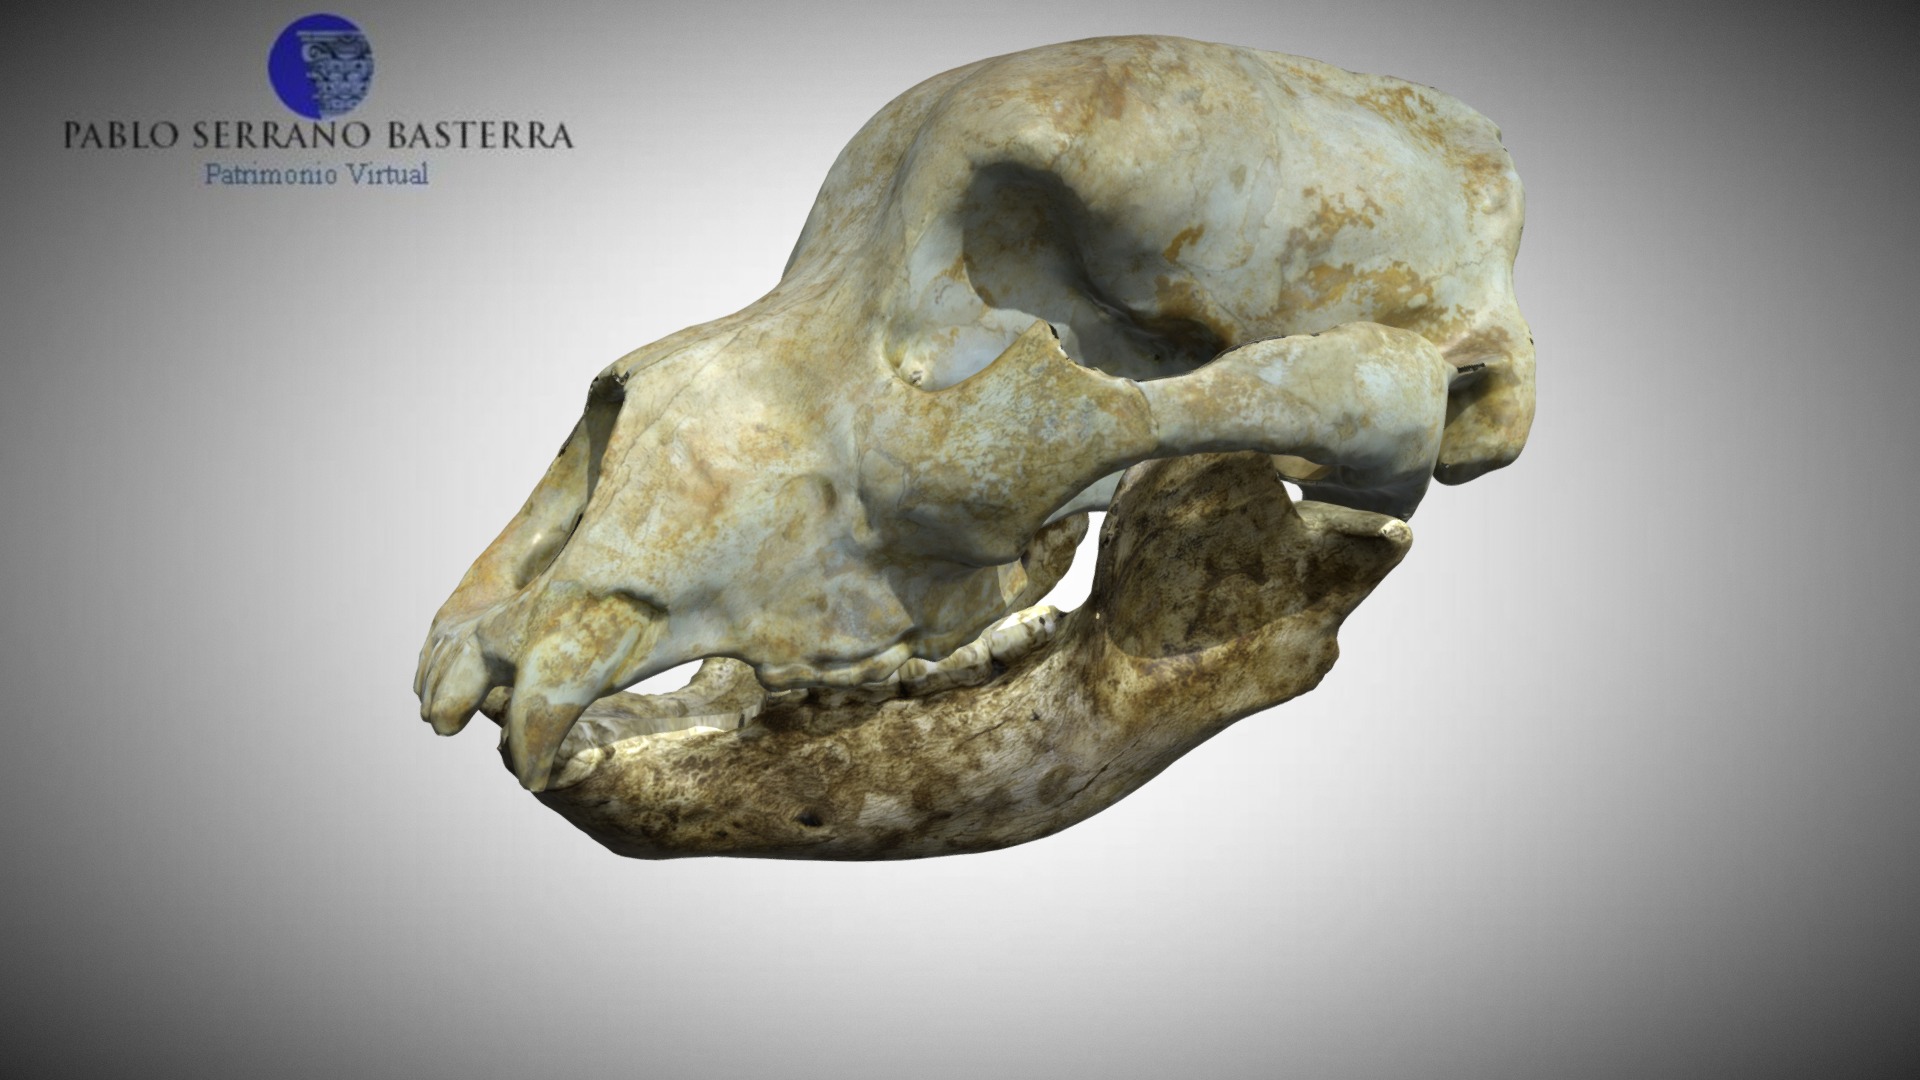 3D model Cave bear "Ursus deningeri" skull low-poly anim. - This is a 3D model of the Cave bear "Ursus deningeri" skull low-poly anim.. The 3D model is about a skull of an animal.